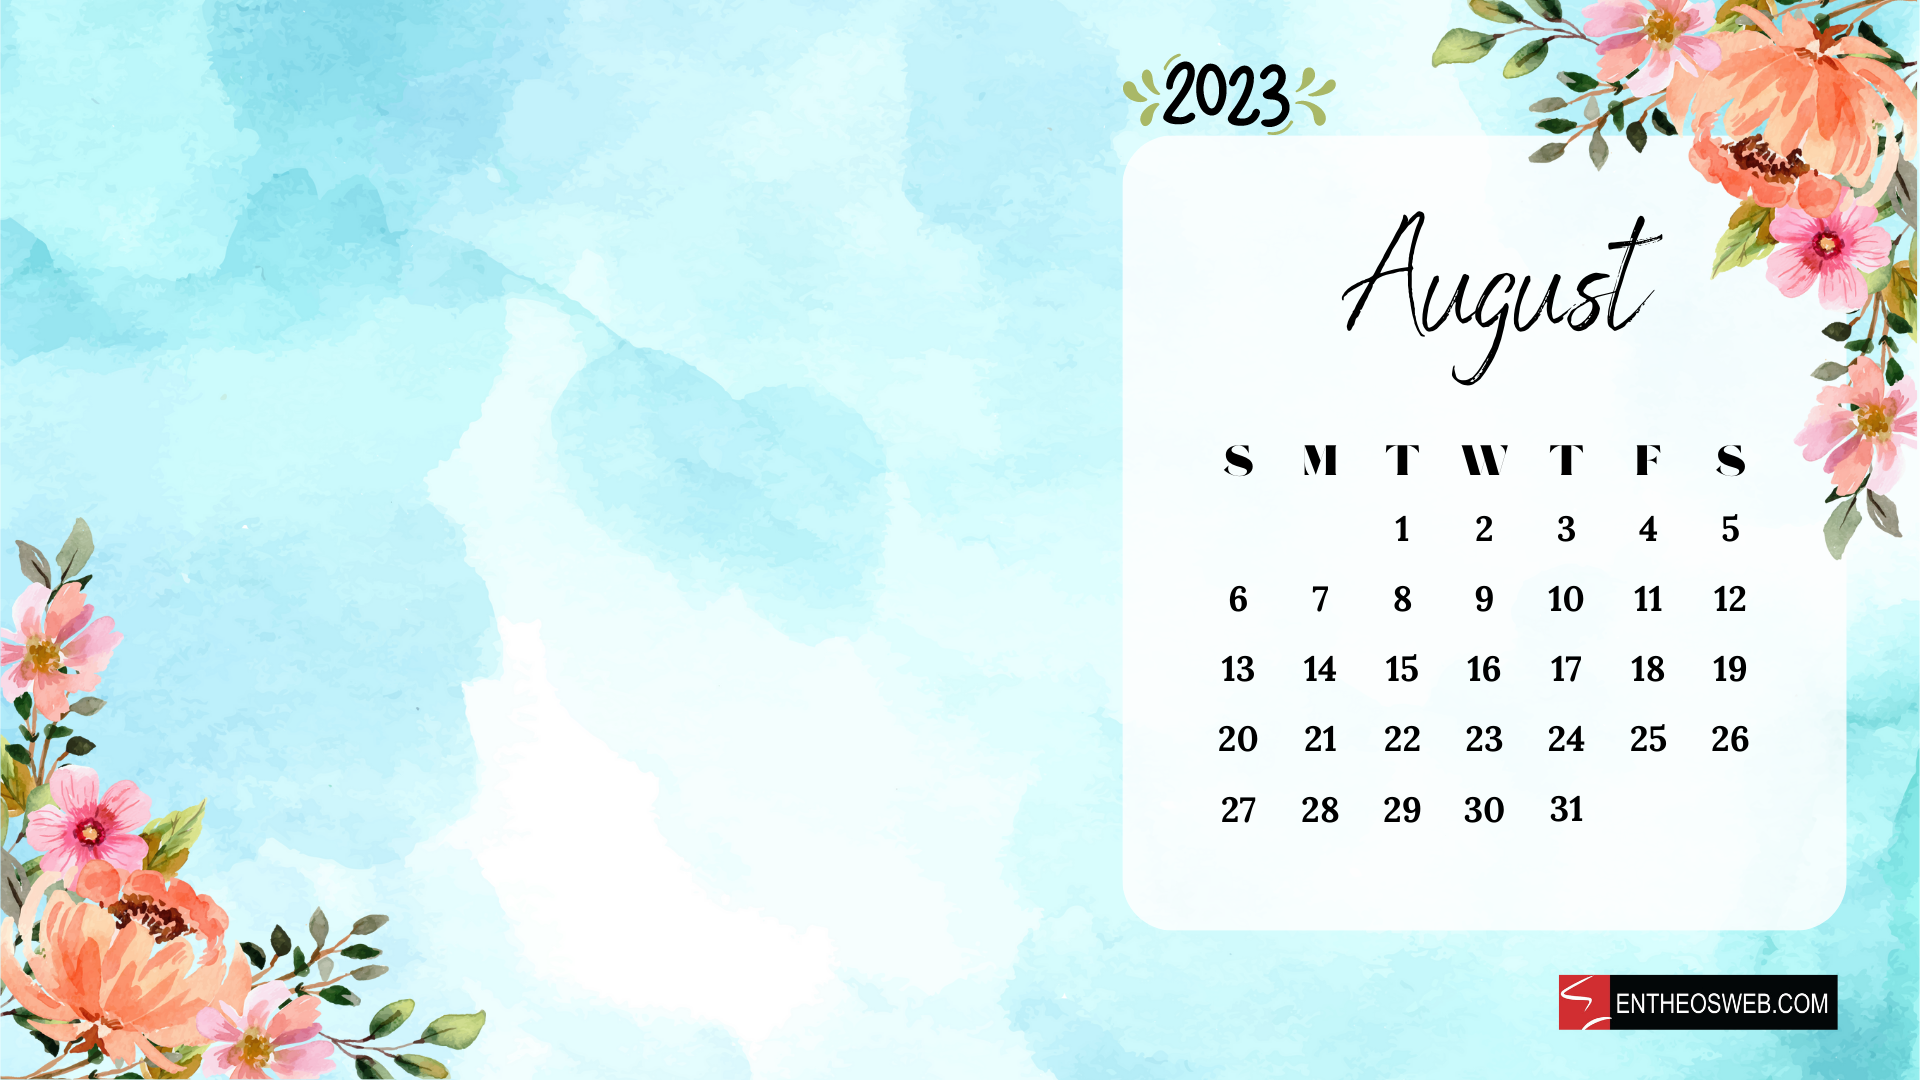 August 2023 Calendar Wallpapers Top Free August 2023 Calendar